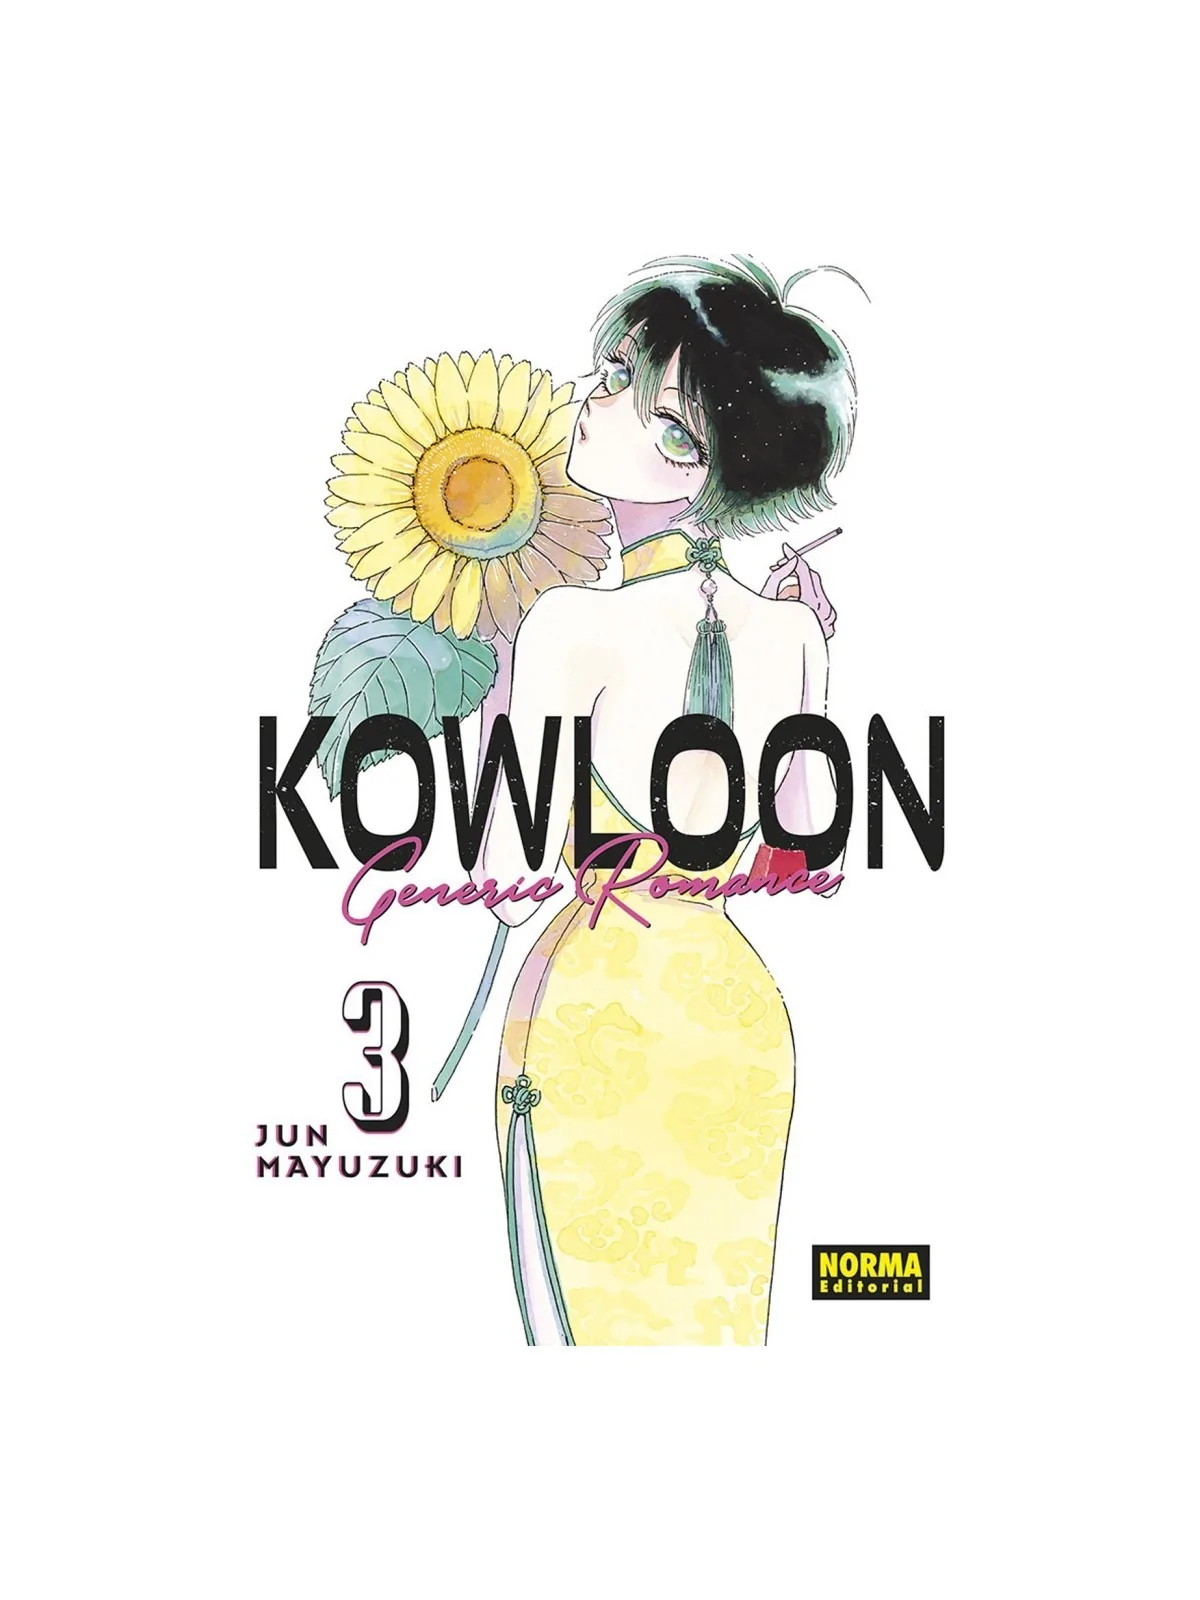 Comprar Kowloon Generic Romance 03 barato al mejor precio 8,55 € de No